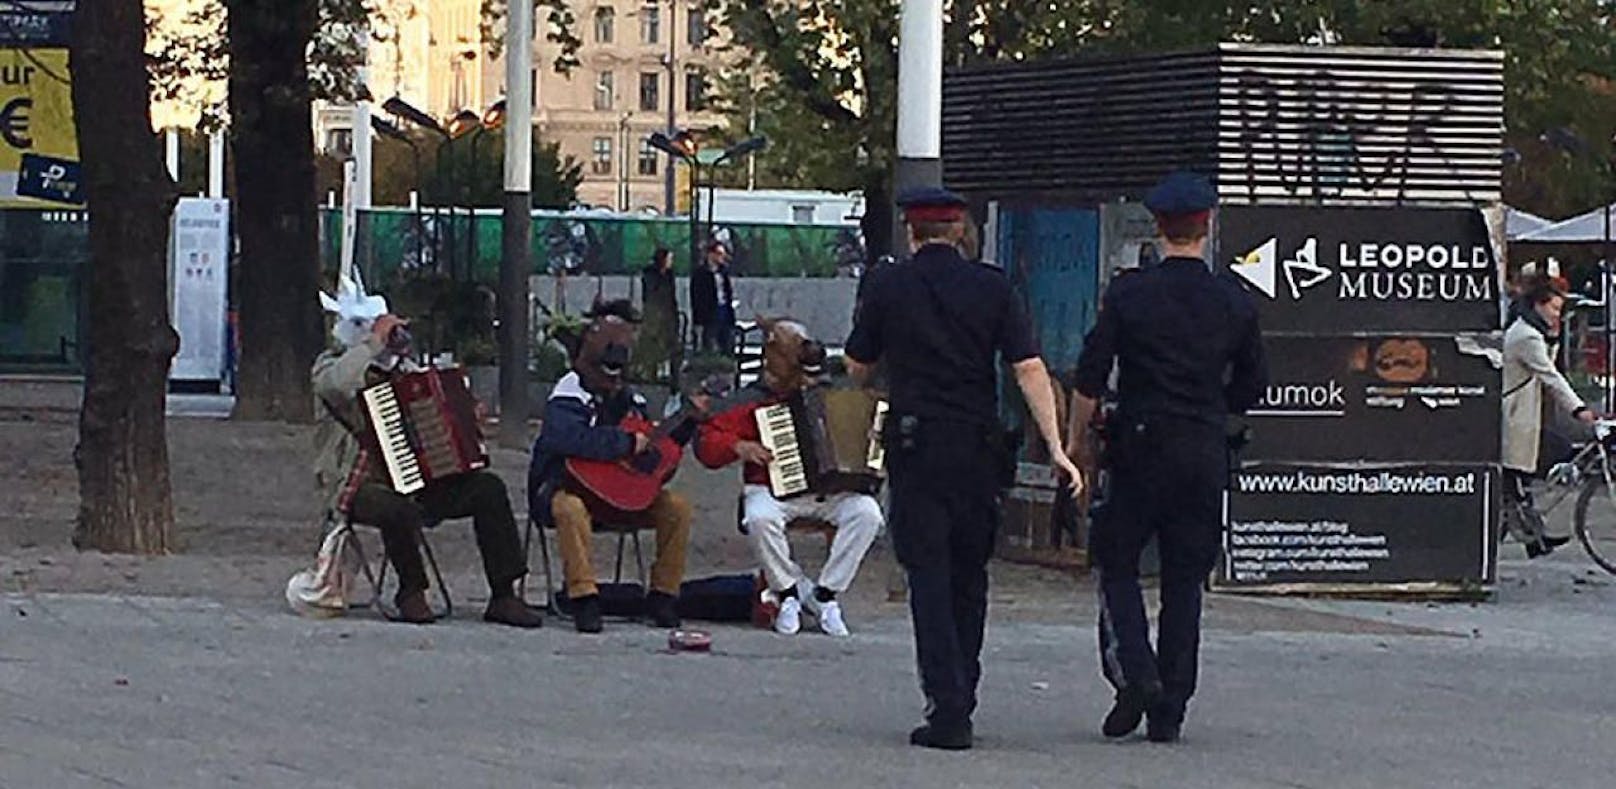 Die Polizisten sollen die Musiker nur auf das Verhüllungsverbot hingewiesen haben.